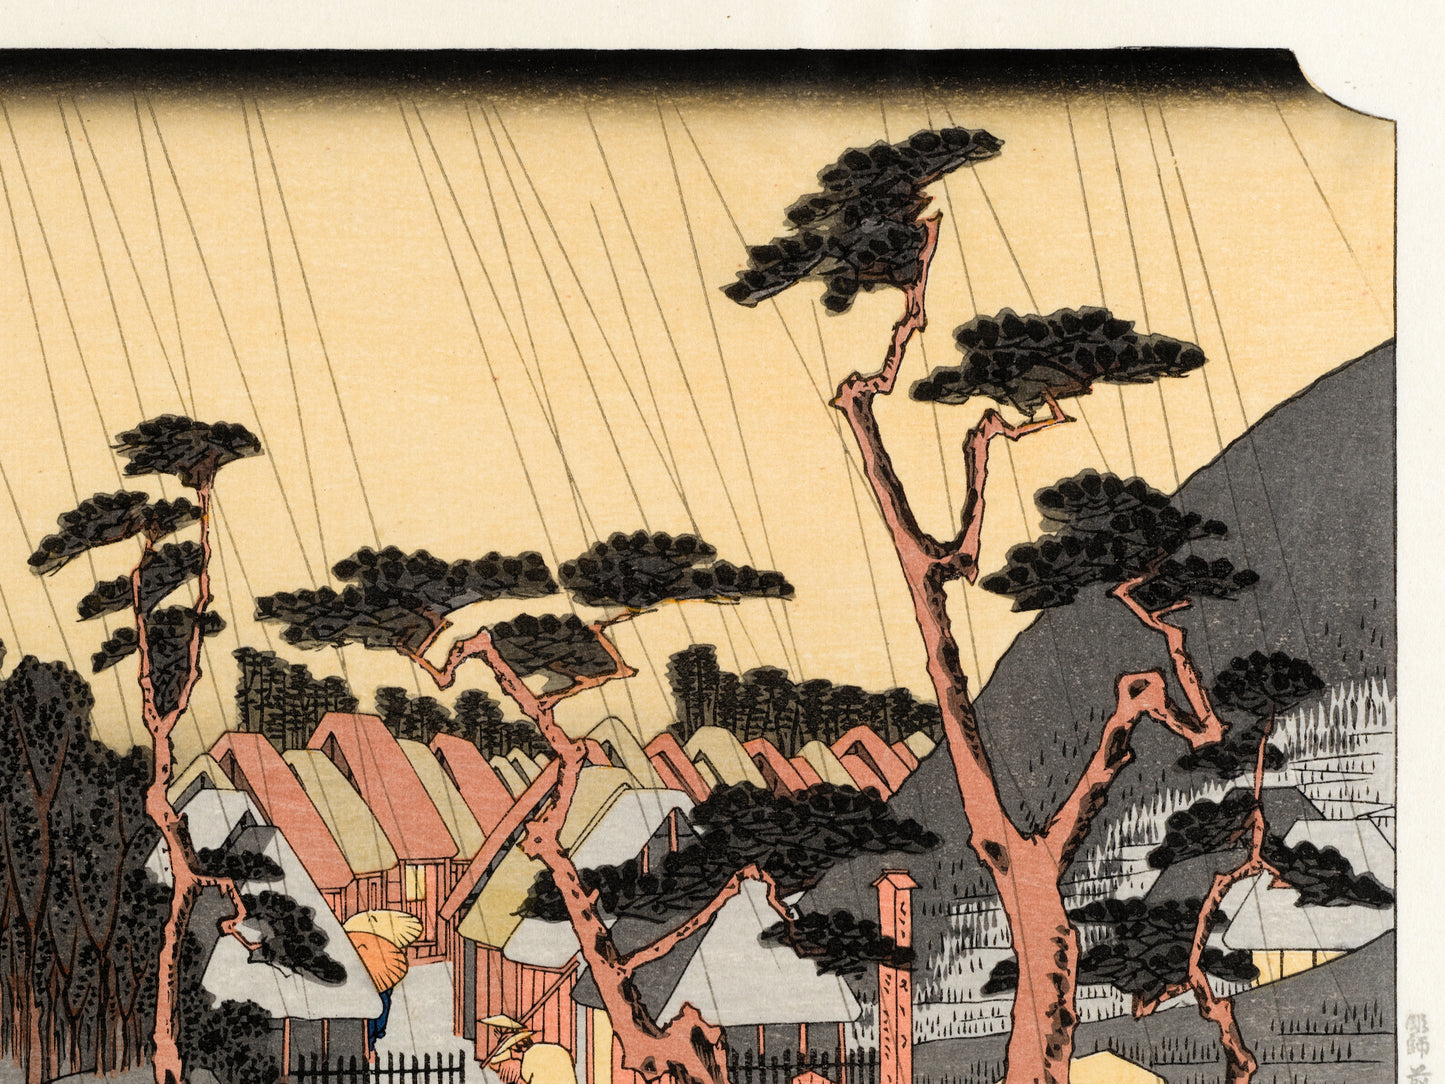 estampe japonaise paysage de Hiroshige, des pèlerins arrvient sous la pluie à la station Oiso du Tokaido, un homme avec un chapeau tirant son cheval lourdement chargé arrive au village, quart superieur droit de l'estampe